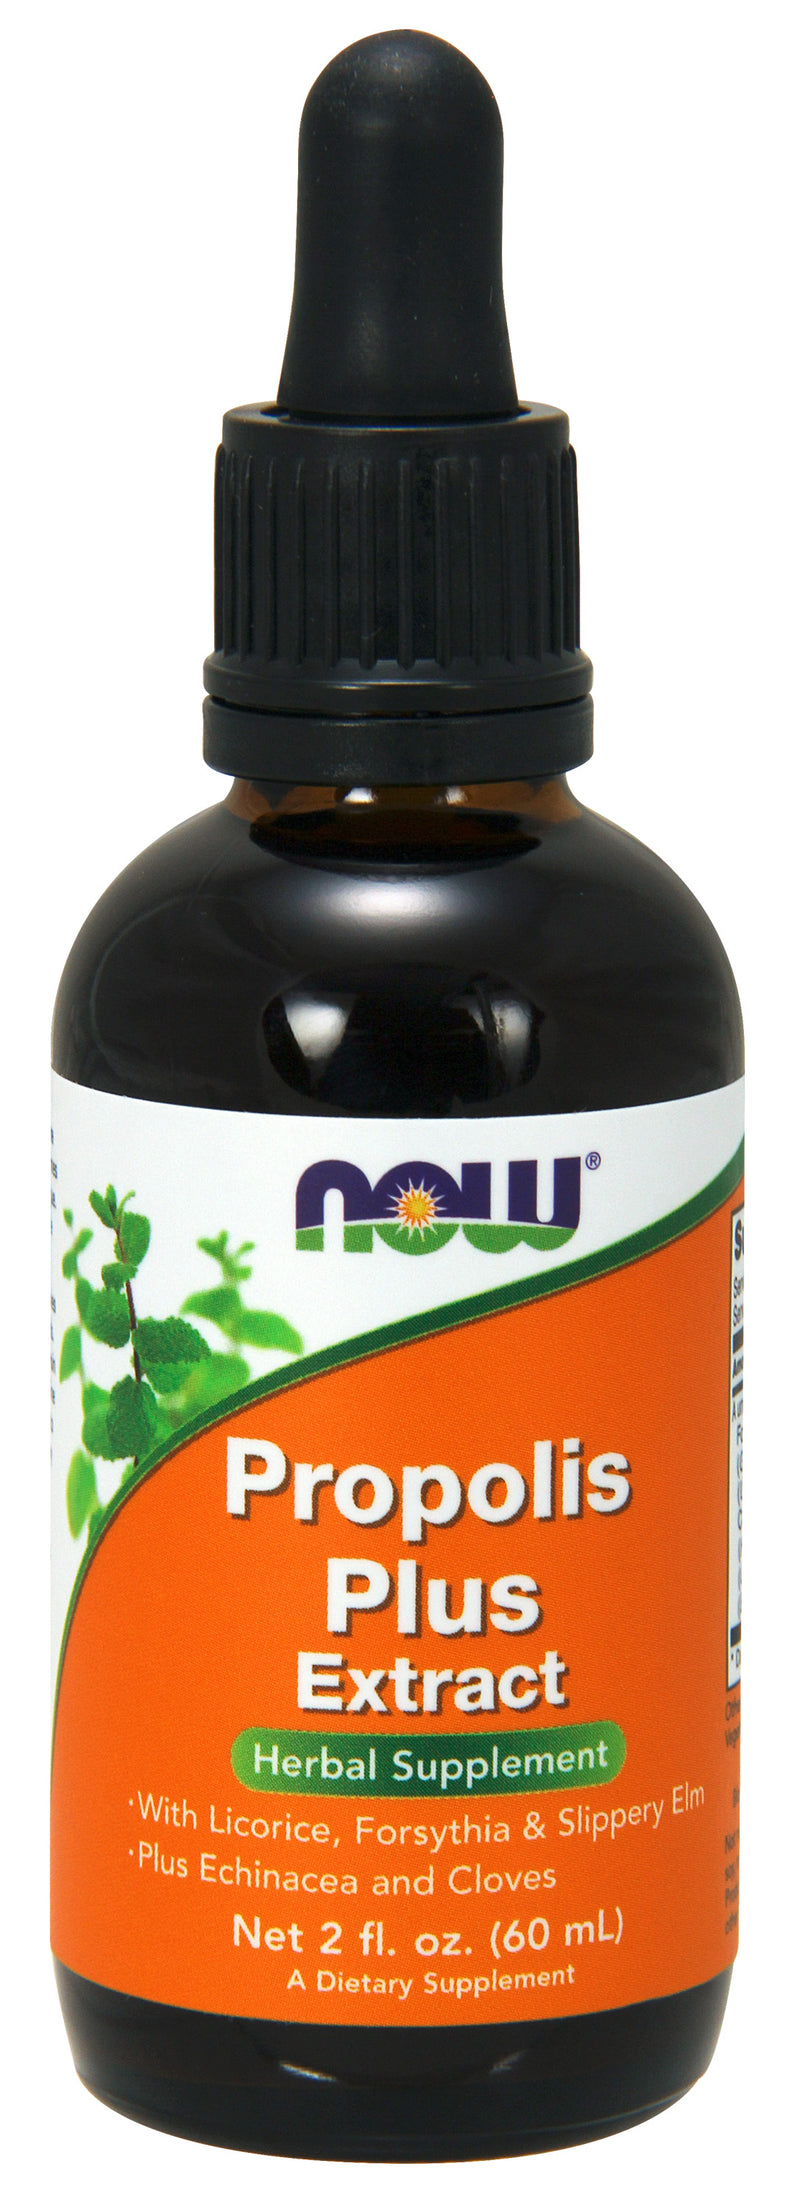 Propolis Plus Extract 2 fl oz (60 ml)